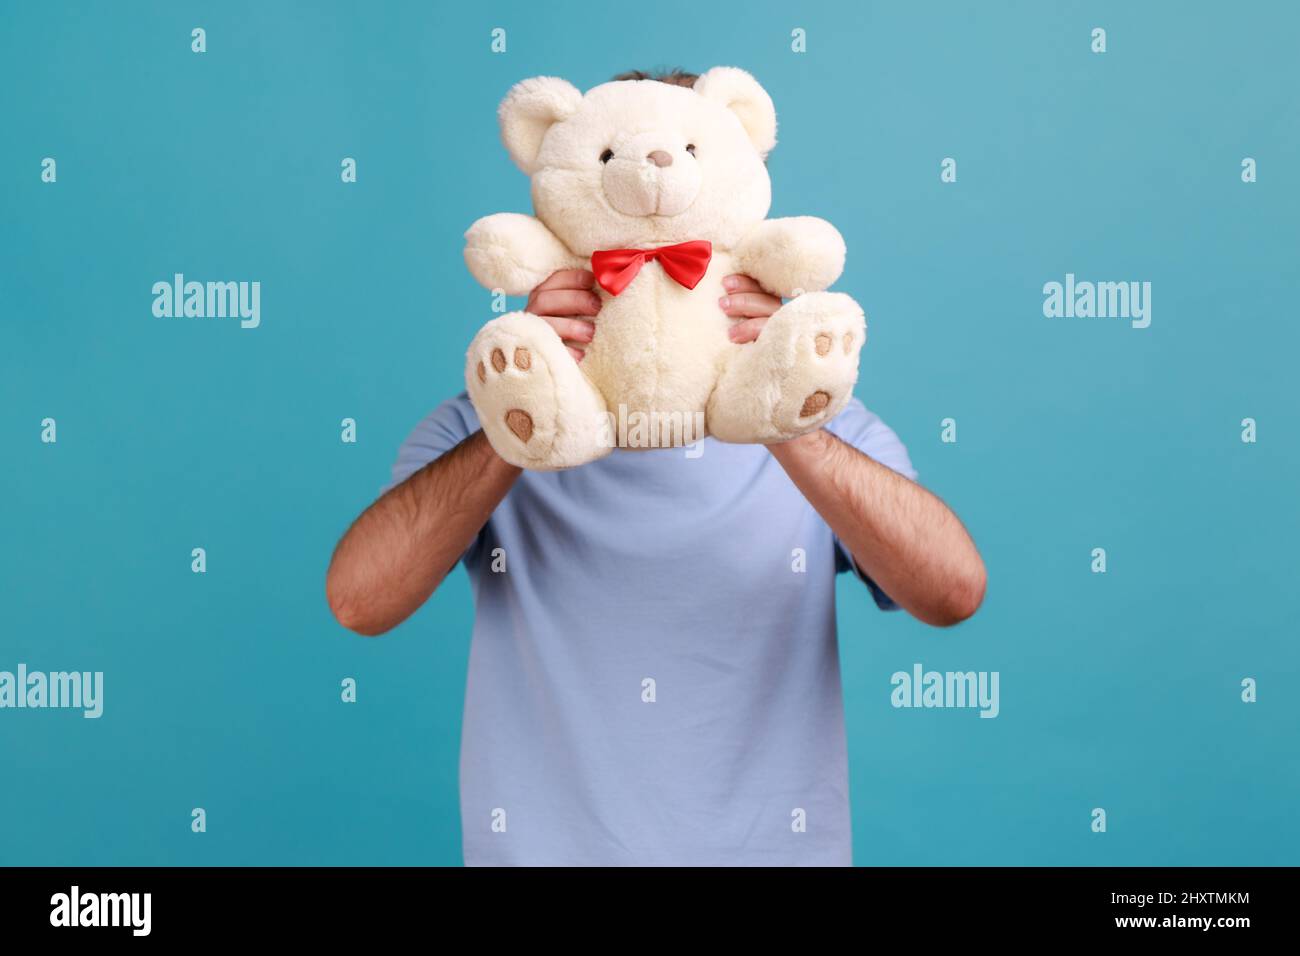 Porträt eines unbekannten anonymen bärtigen Mannes, der sein Gesicht hinter einem weißen, weichen Teddybären versteckt, romantische Überraschung für seinen Mädchenbär. Innenaufnahme des Studios isoliert auf blauem Hintergrund. Stockfoto